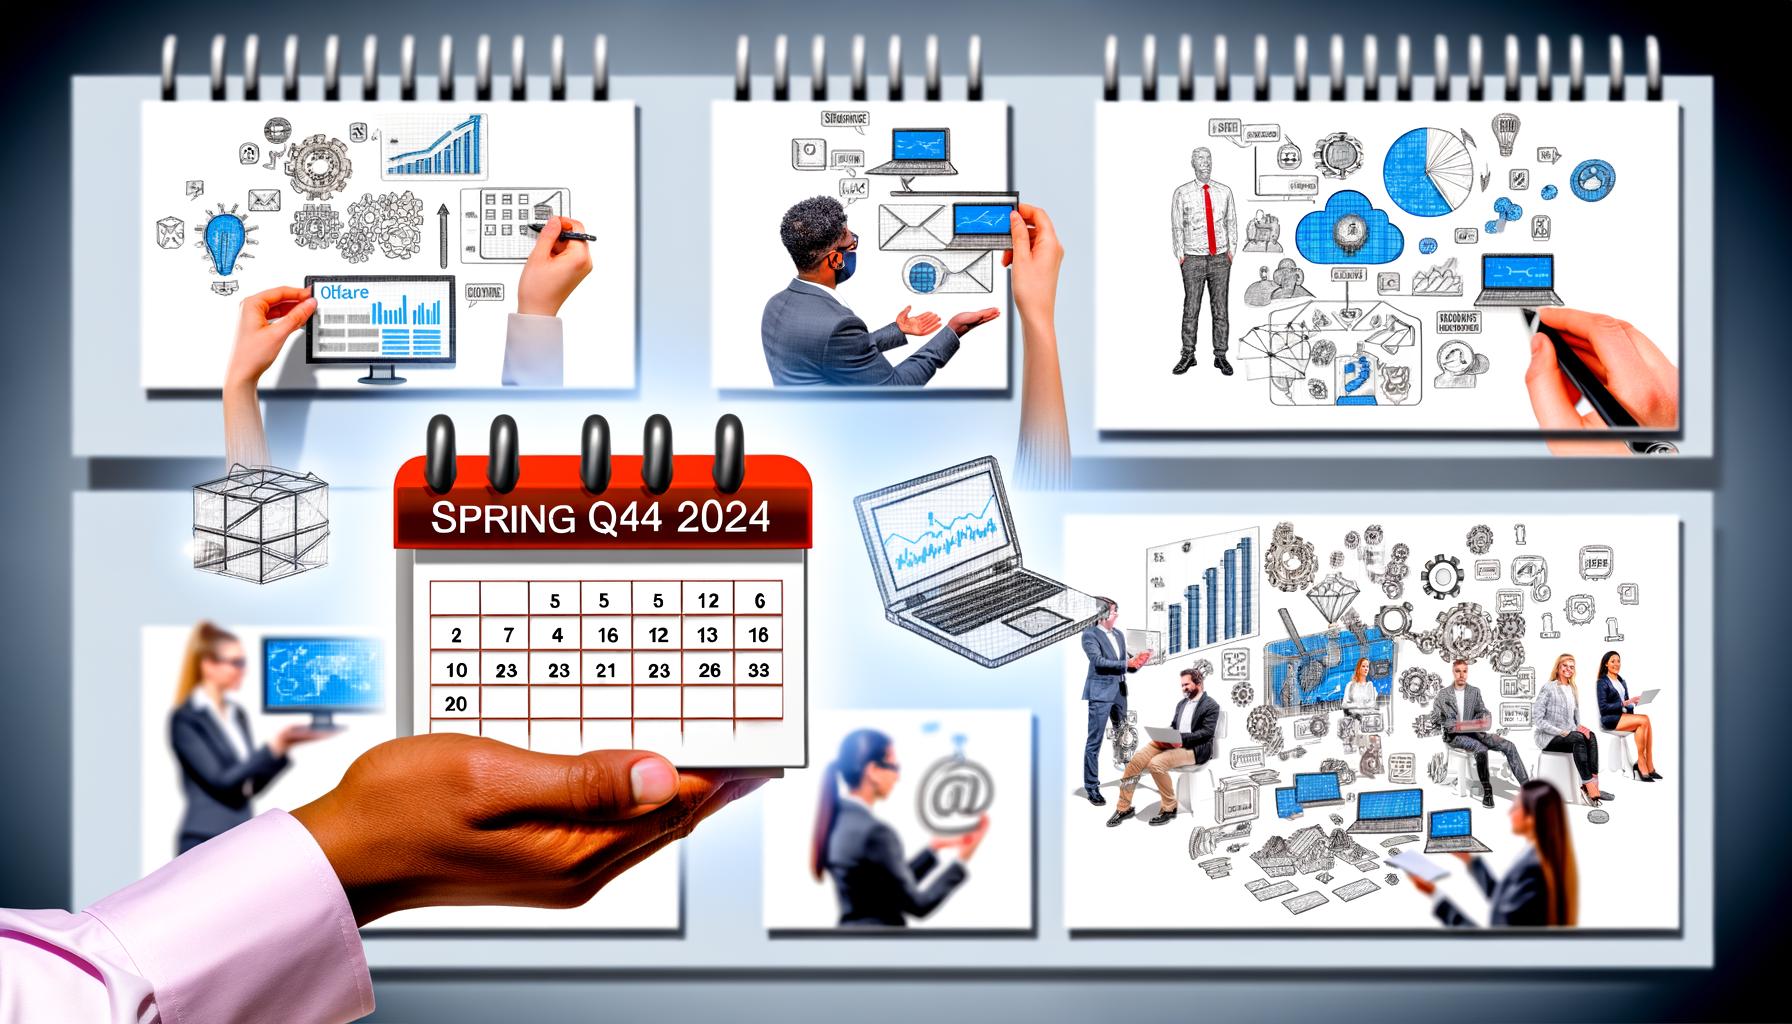 Mise à jour de la fonctionnalité des applications Azure Spring Q4 2024